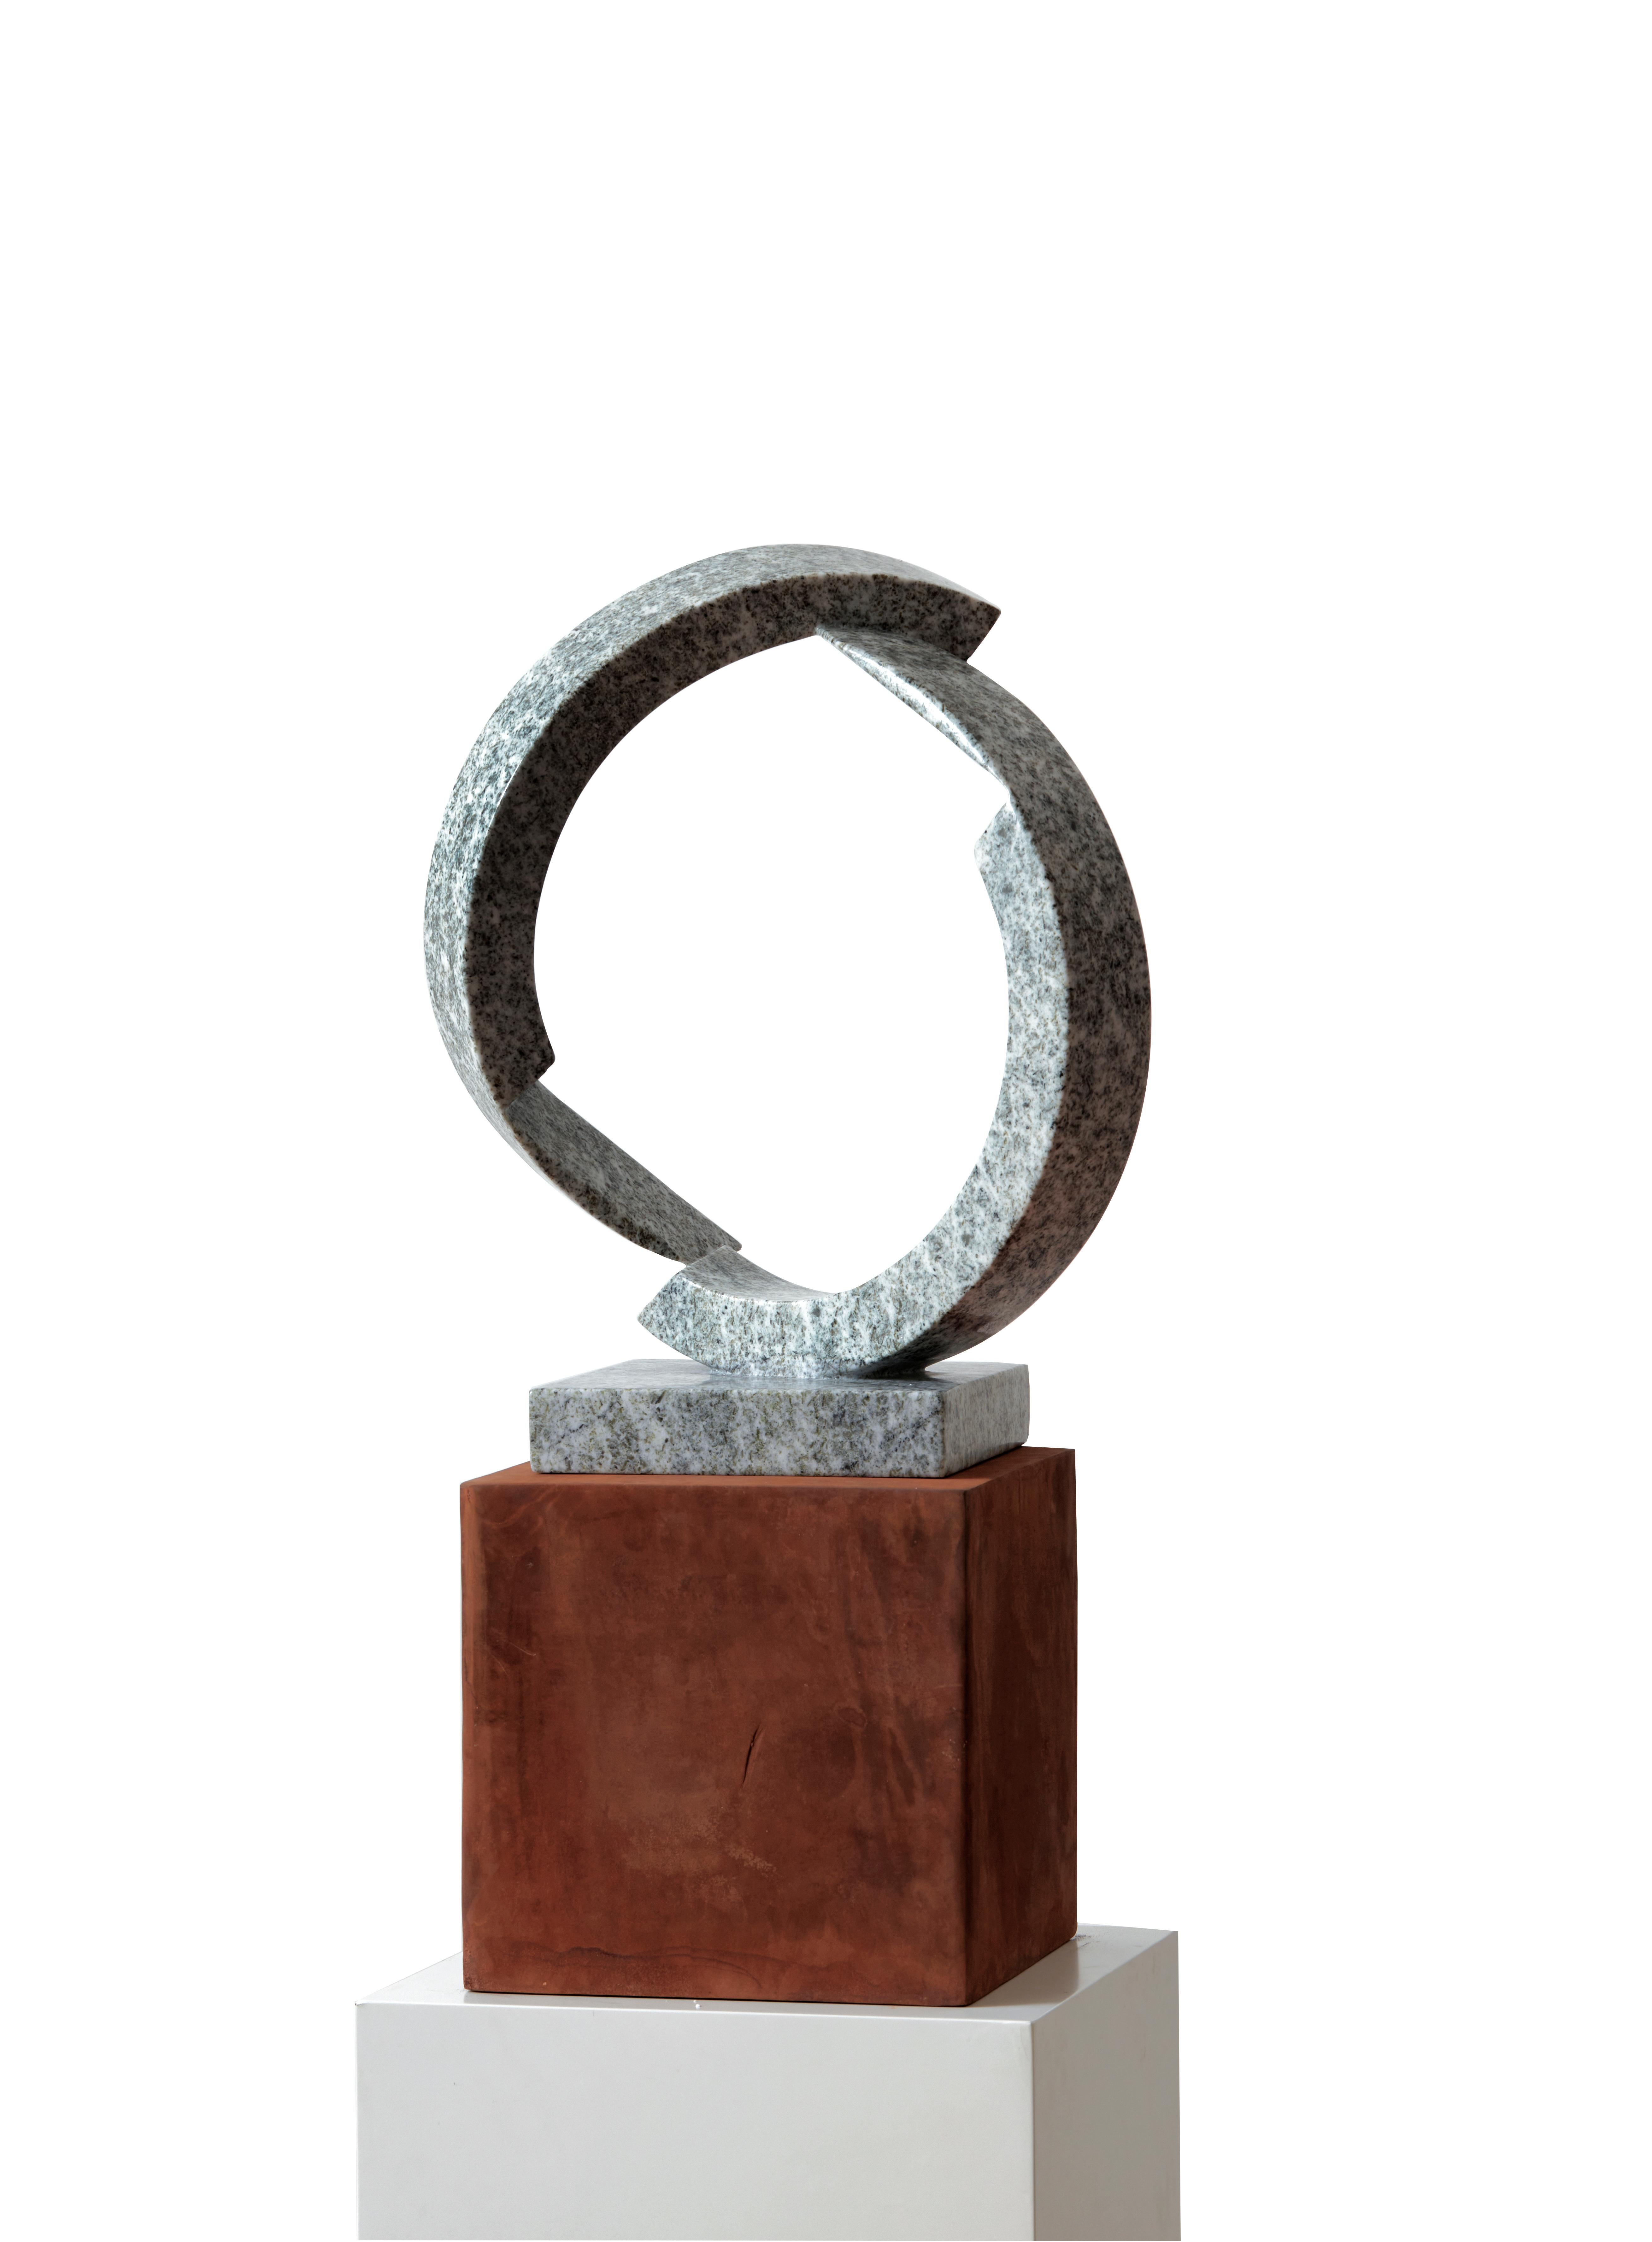 Serpentine ＆Iron Sculpture “Solitude”, 2020 